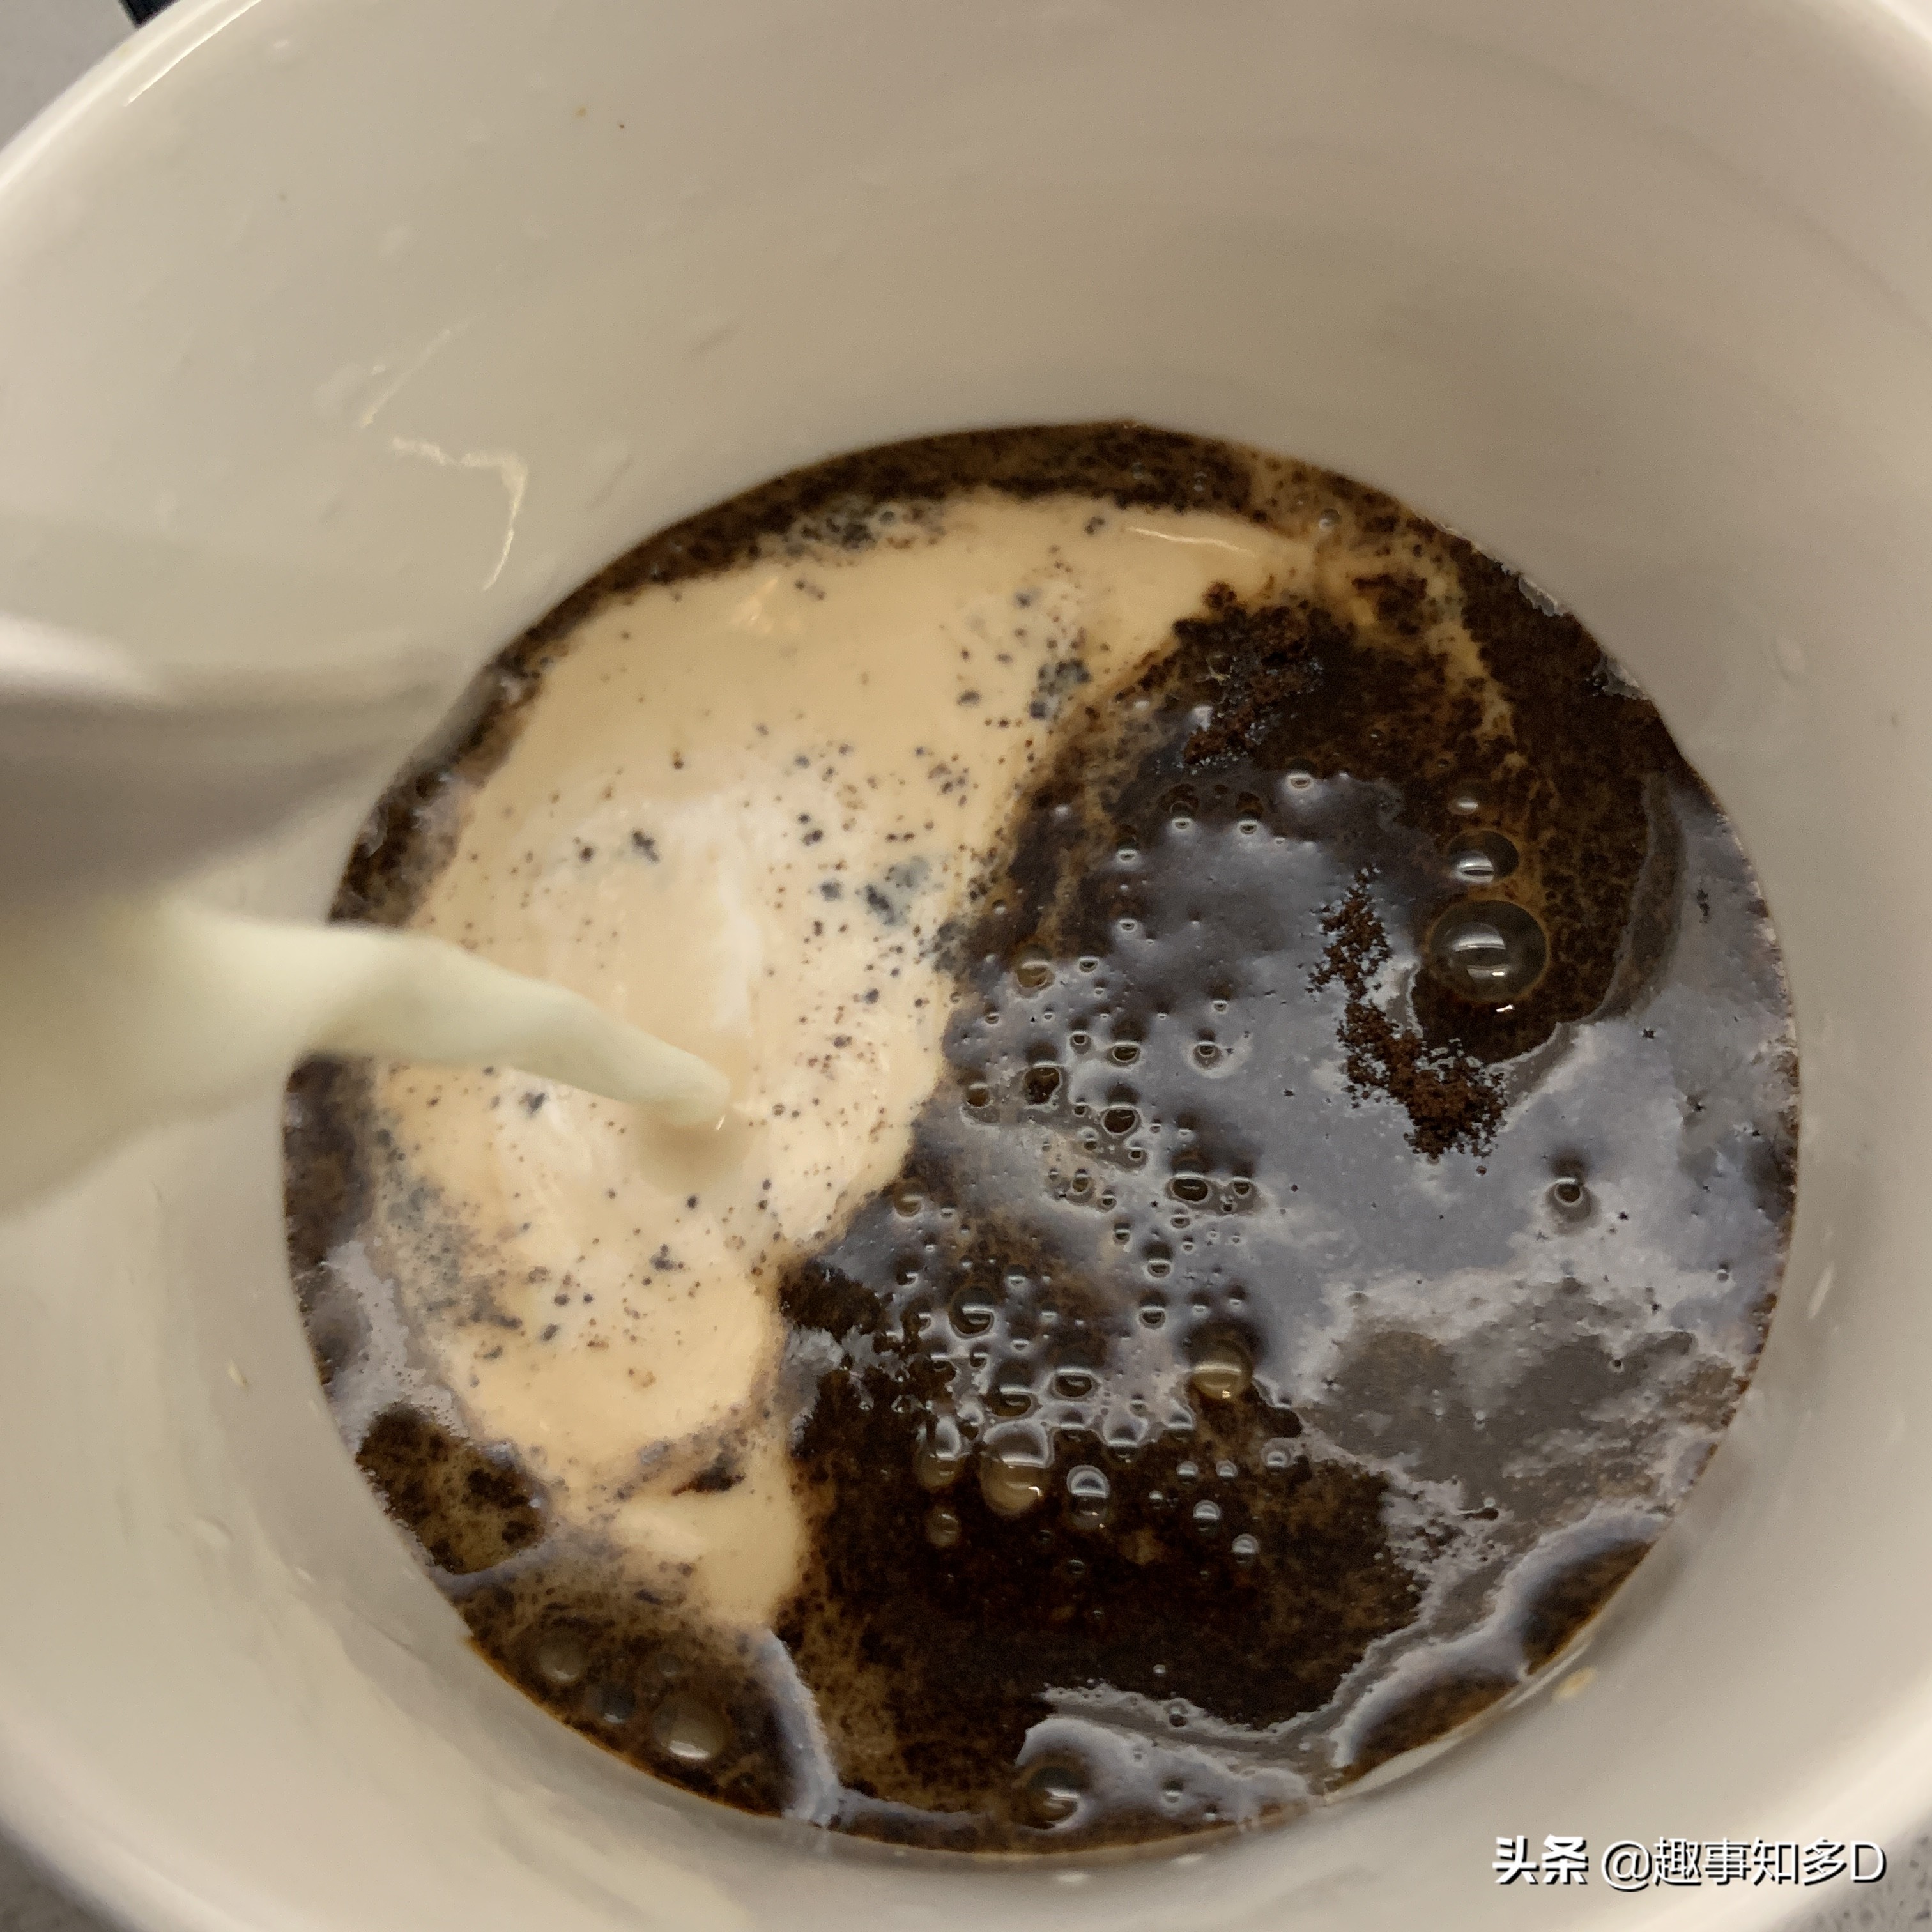 美食测评来了！熬夜后的周末，打工仔实测黑鹿咖啡的风味如何？